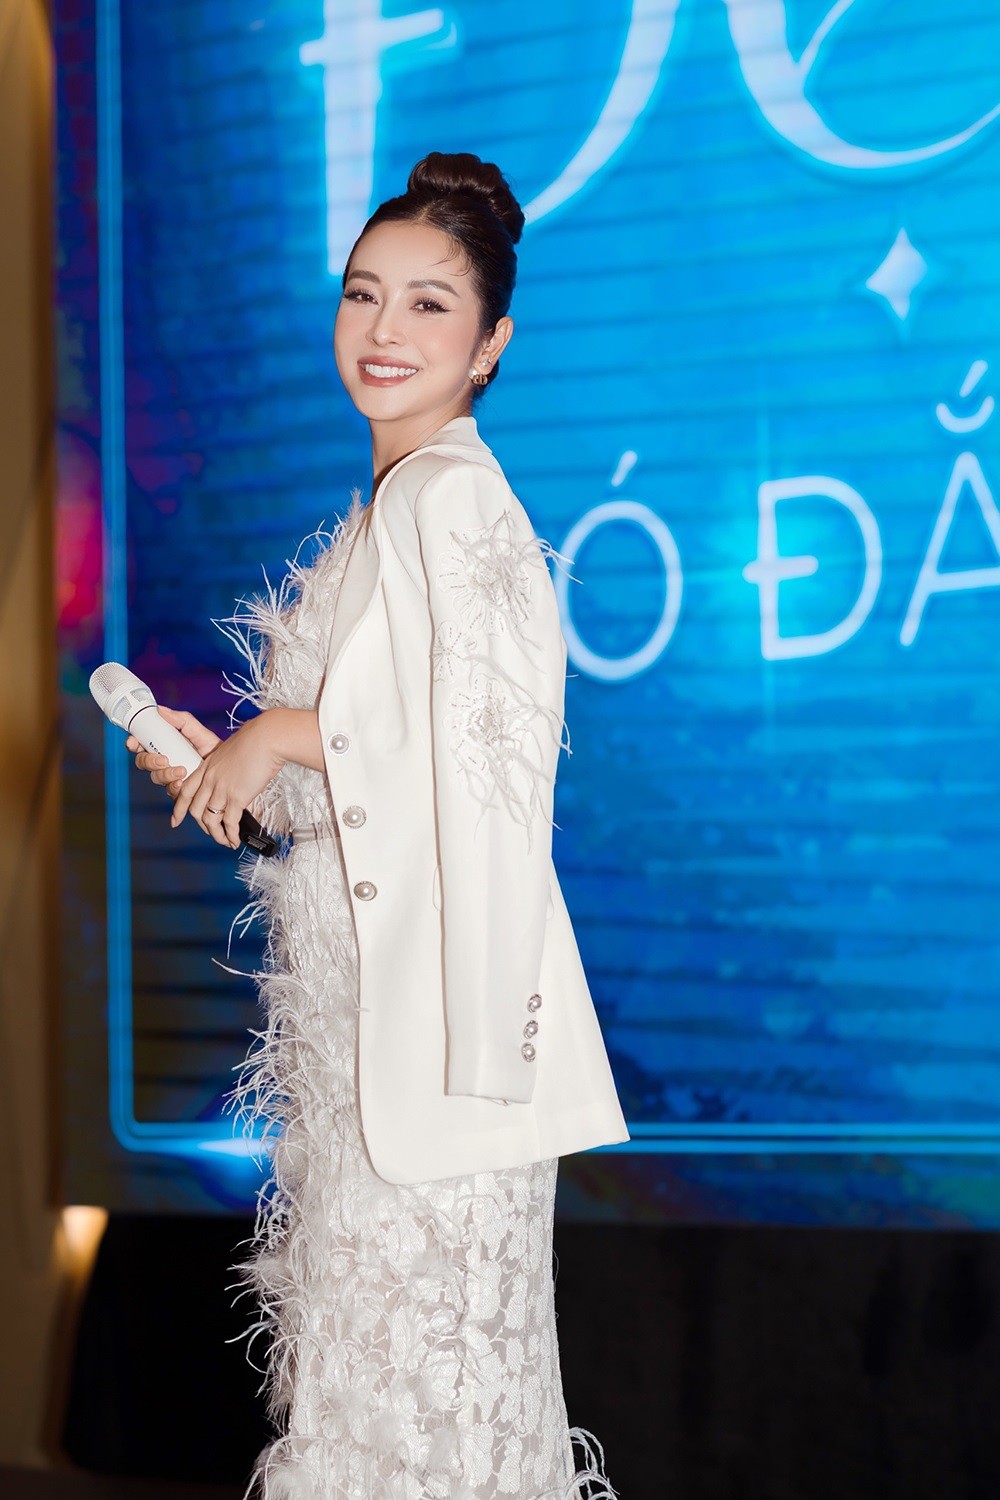 Hoa hậu Jennifer Phạm đẹp như nữ sinh với đầm trắng tinh tế kết hợp trang điểm kiểu trong veo